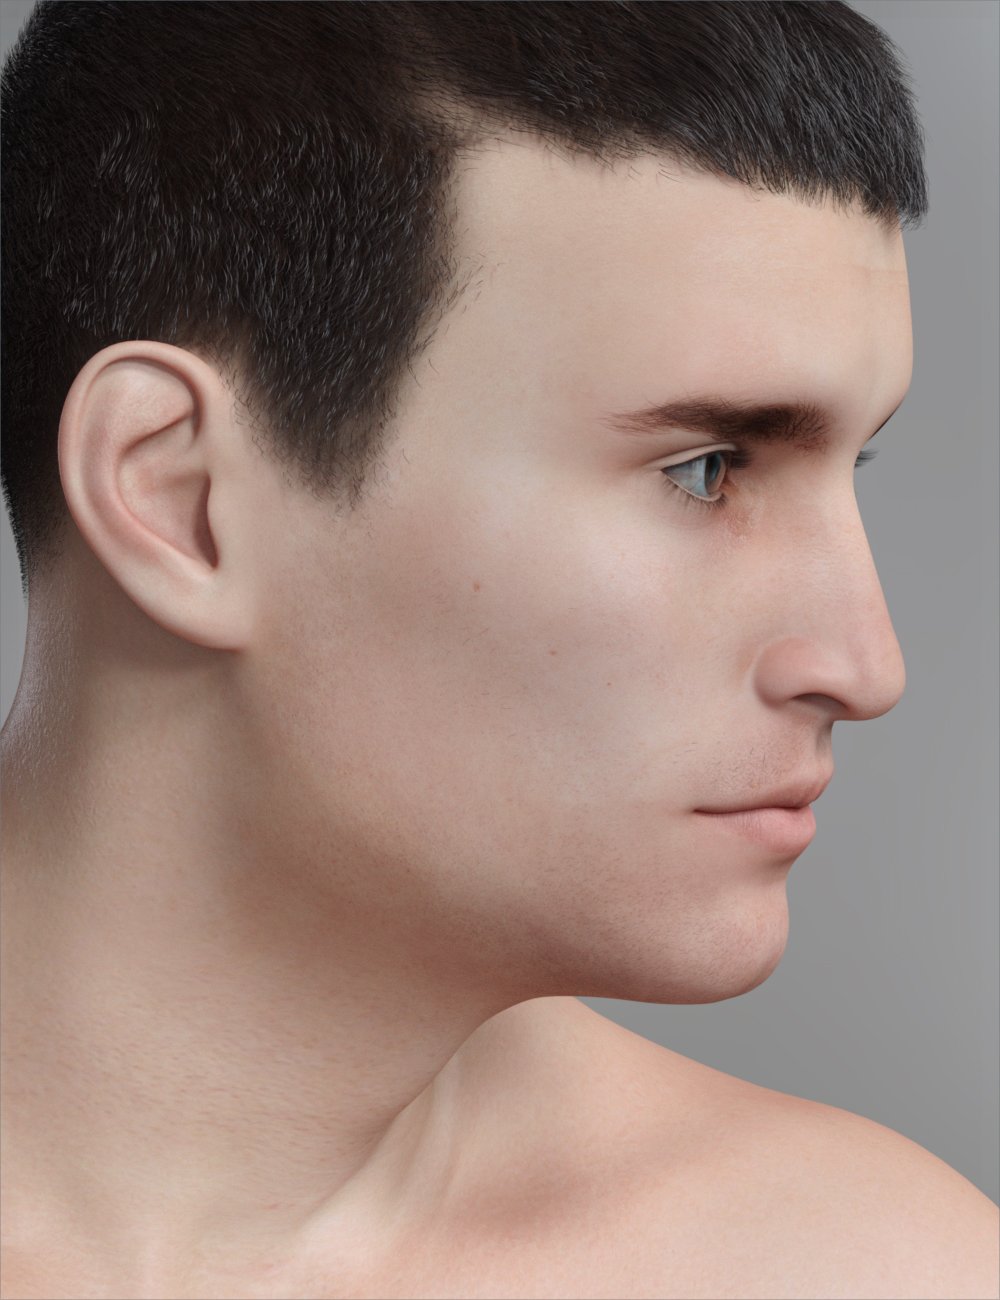 FWSA Jett HD for Genesis 8 Male by: Fred Winkler ArtSabby, 3D Models by Daz 3D